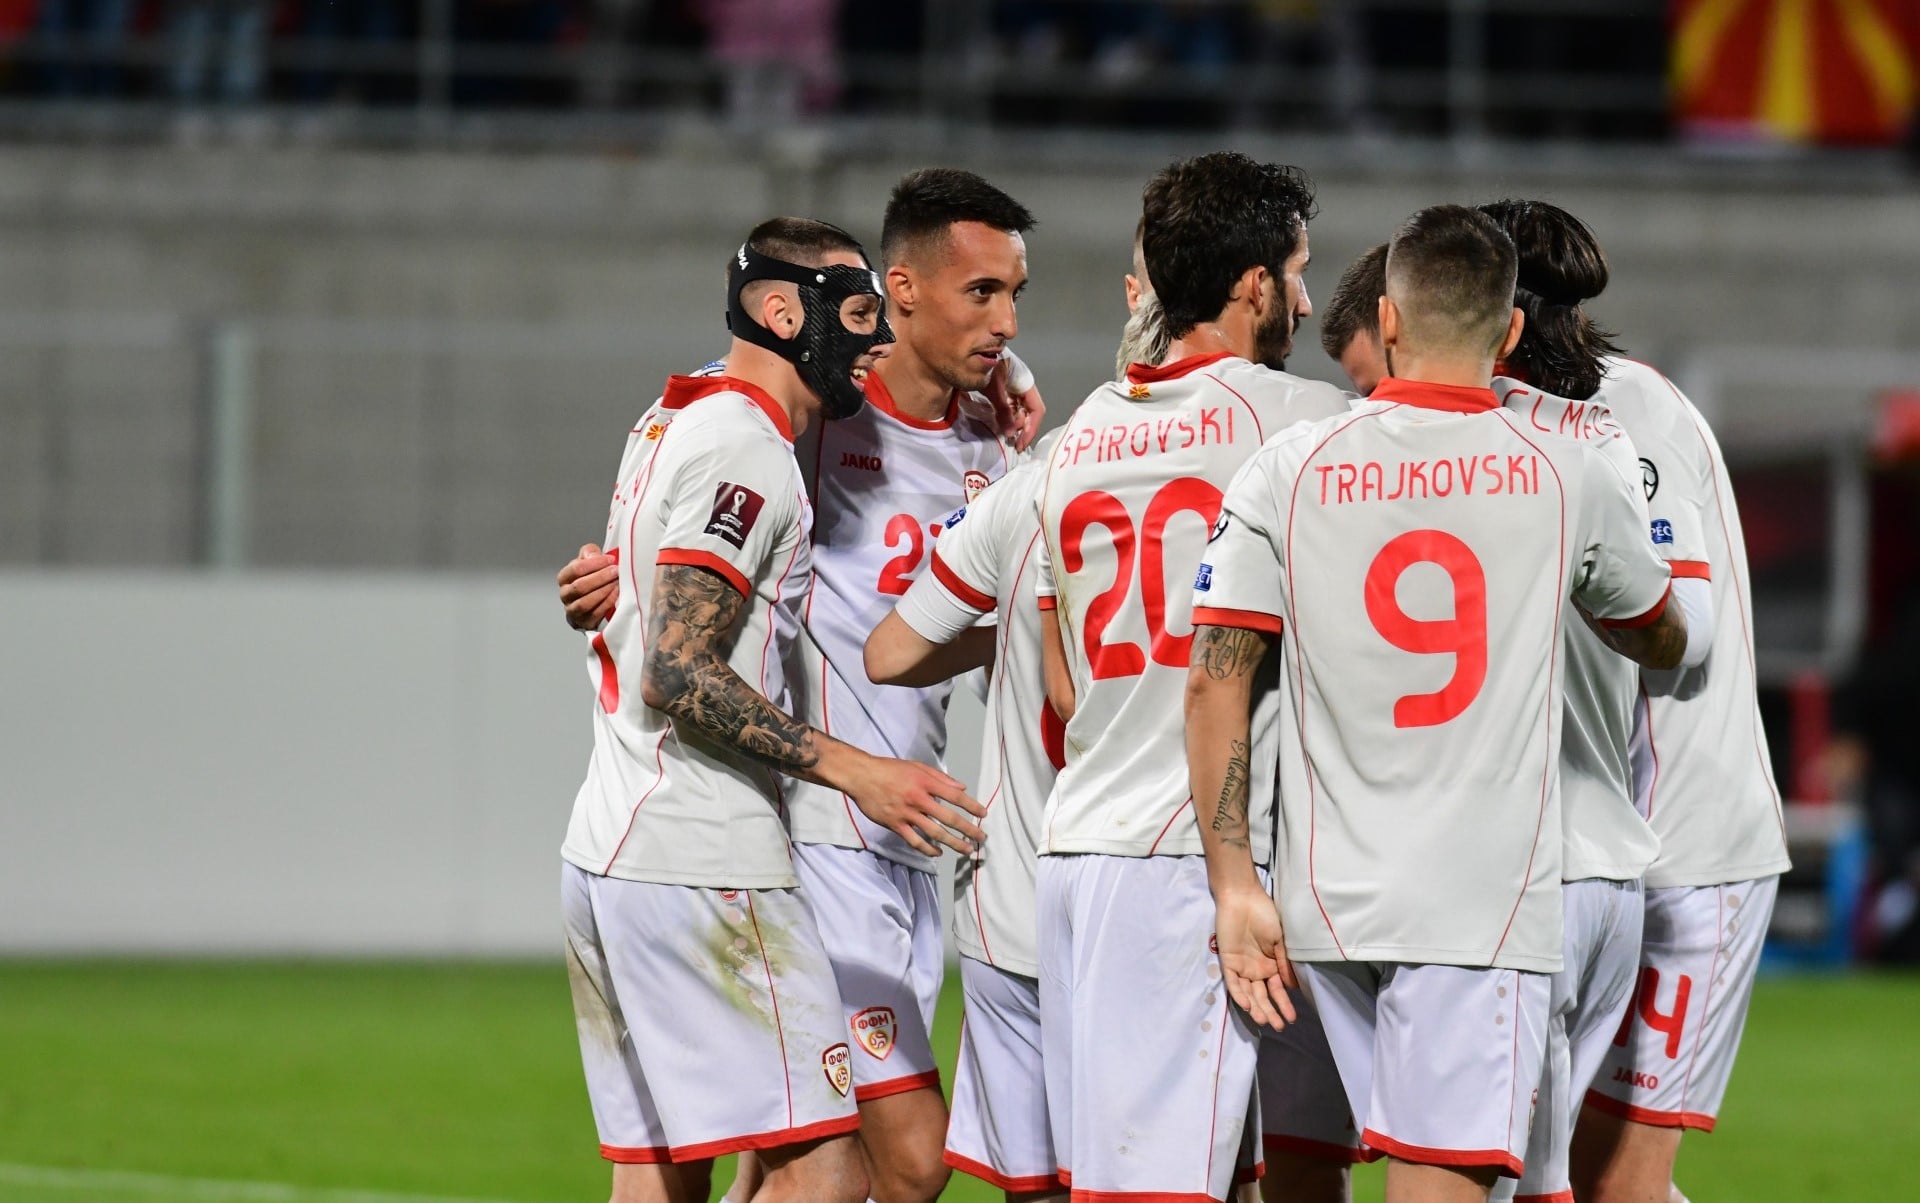 K. Makedonya umutlarını son maça taşıma peşinde